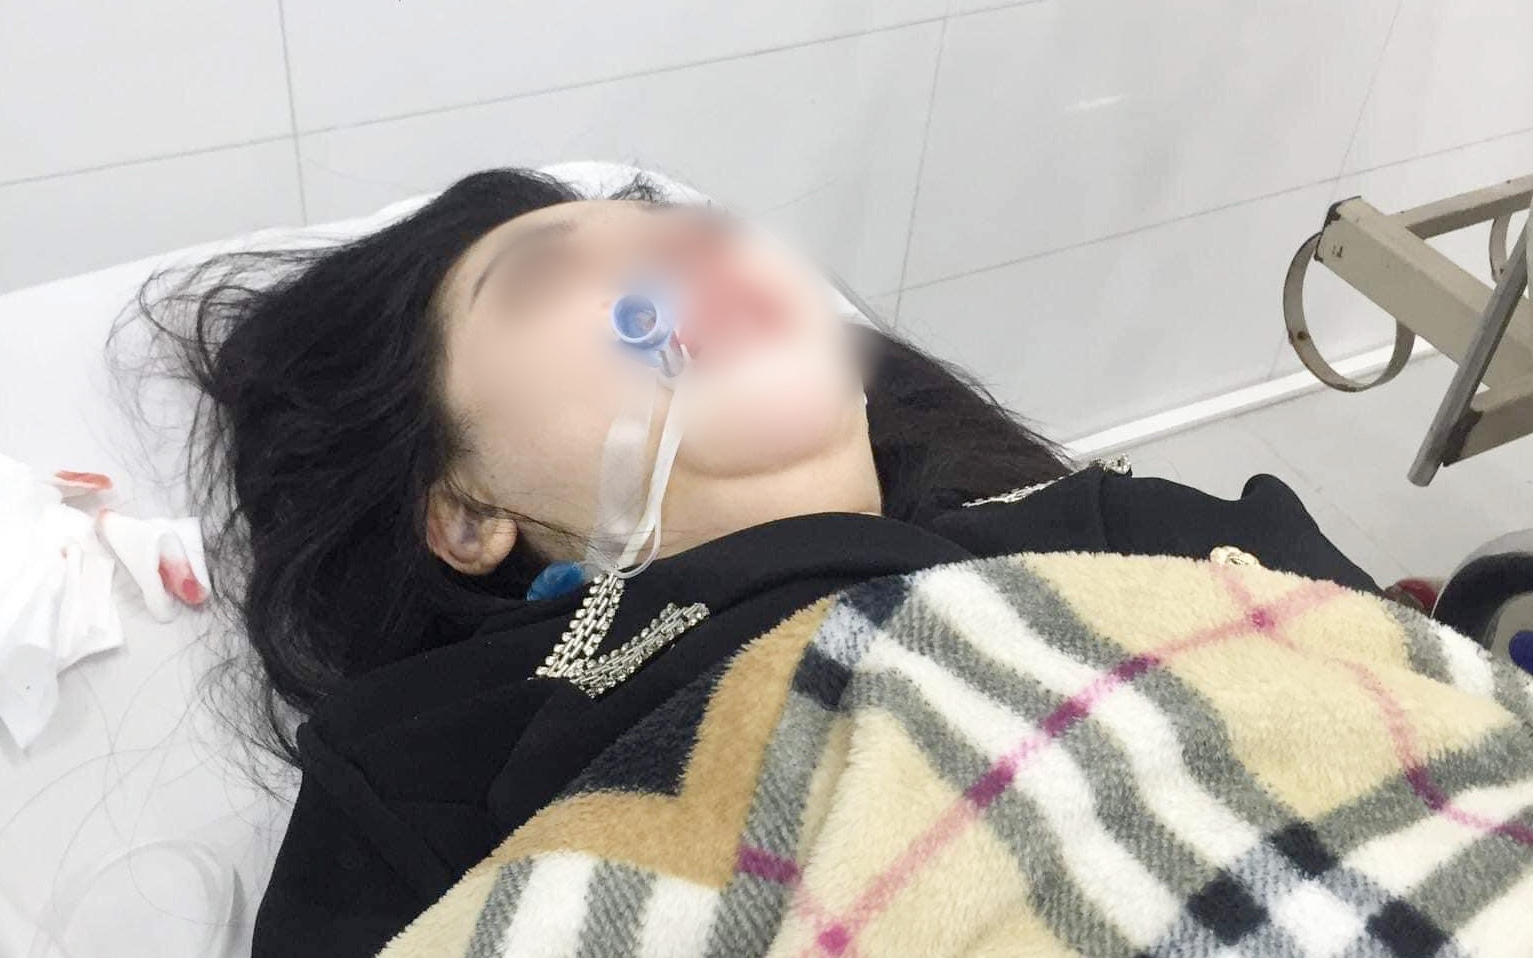 Phẫu thuật nâng mũi tại một cơ sở thẩm mỹ ở Hà Nội, cô gái 22 tuổi hôn mê, nguy kịch